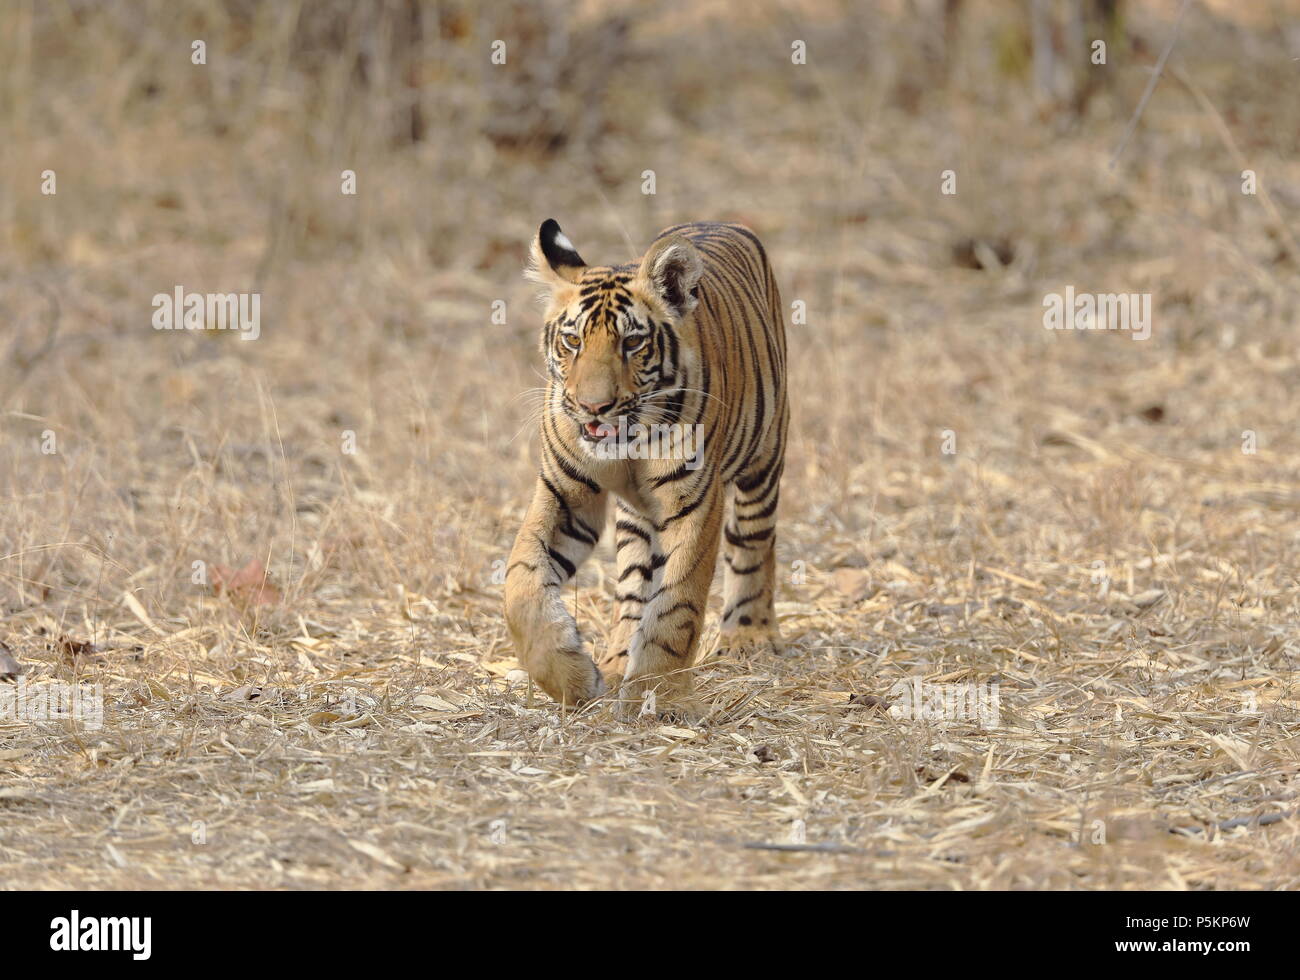 Eine vier Monate alte Tiger Cub auf dem Trockenen Dschungel Bett irgendwo  in einem indischen Tiger Reserve mit ausgezeichneten Gesicht und Körper  details Stockfotografie - Alamy